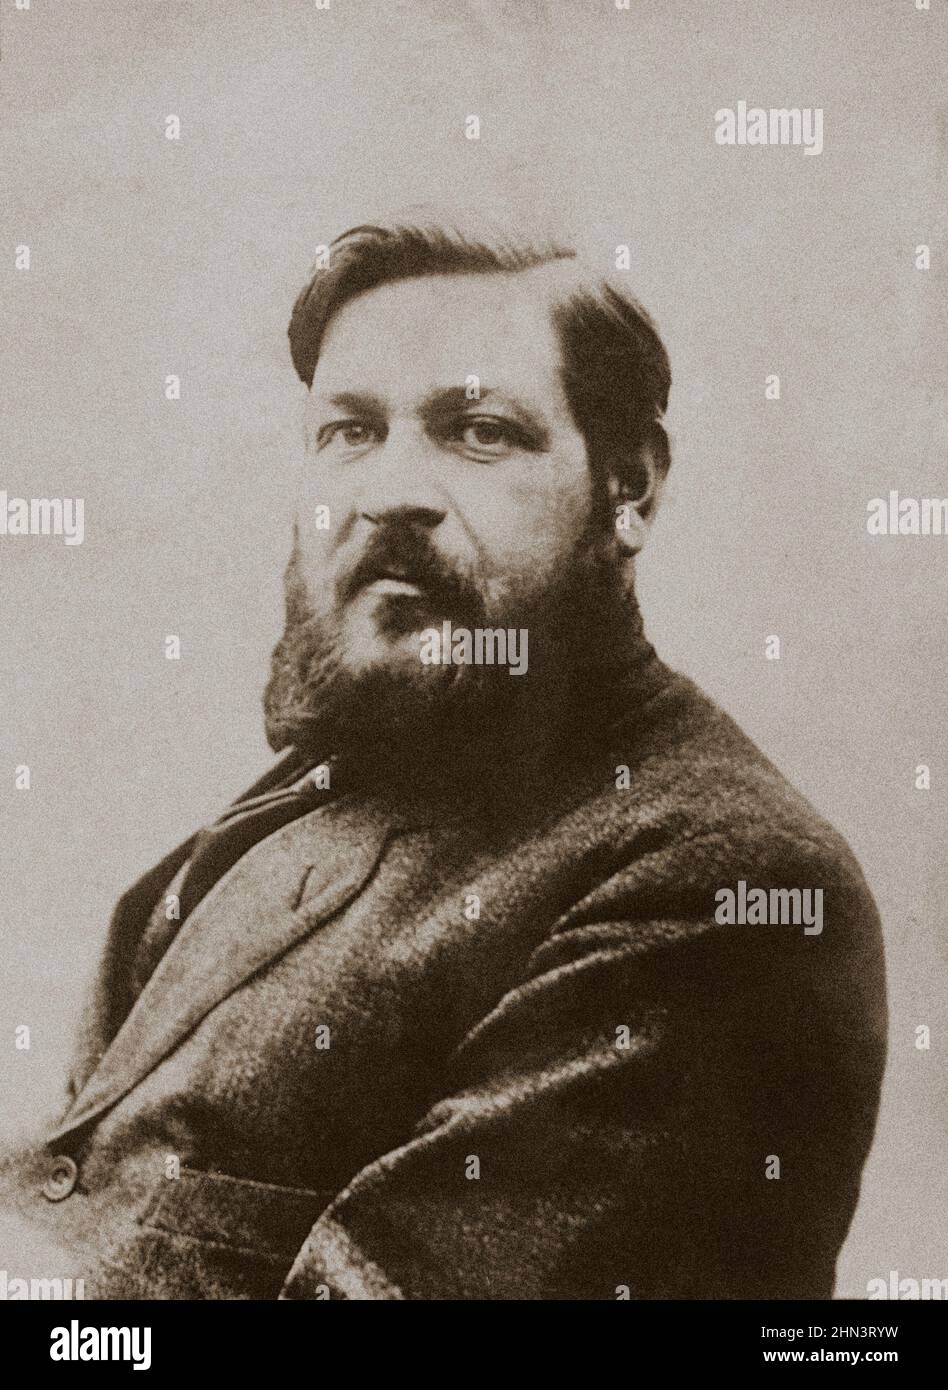 Porträt von Albert Thomas. 1916 Albert Thomas (1878 – 1932) war ein prominenter französischer Sozialist und erster Waffenminister für das französische Dritte R Stockfoto